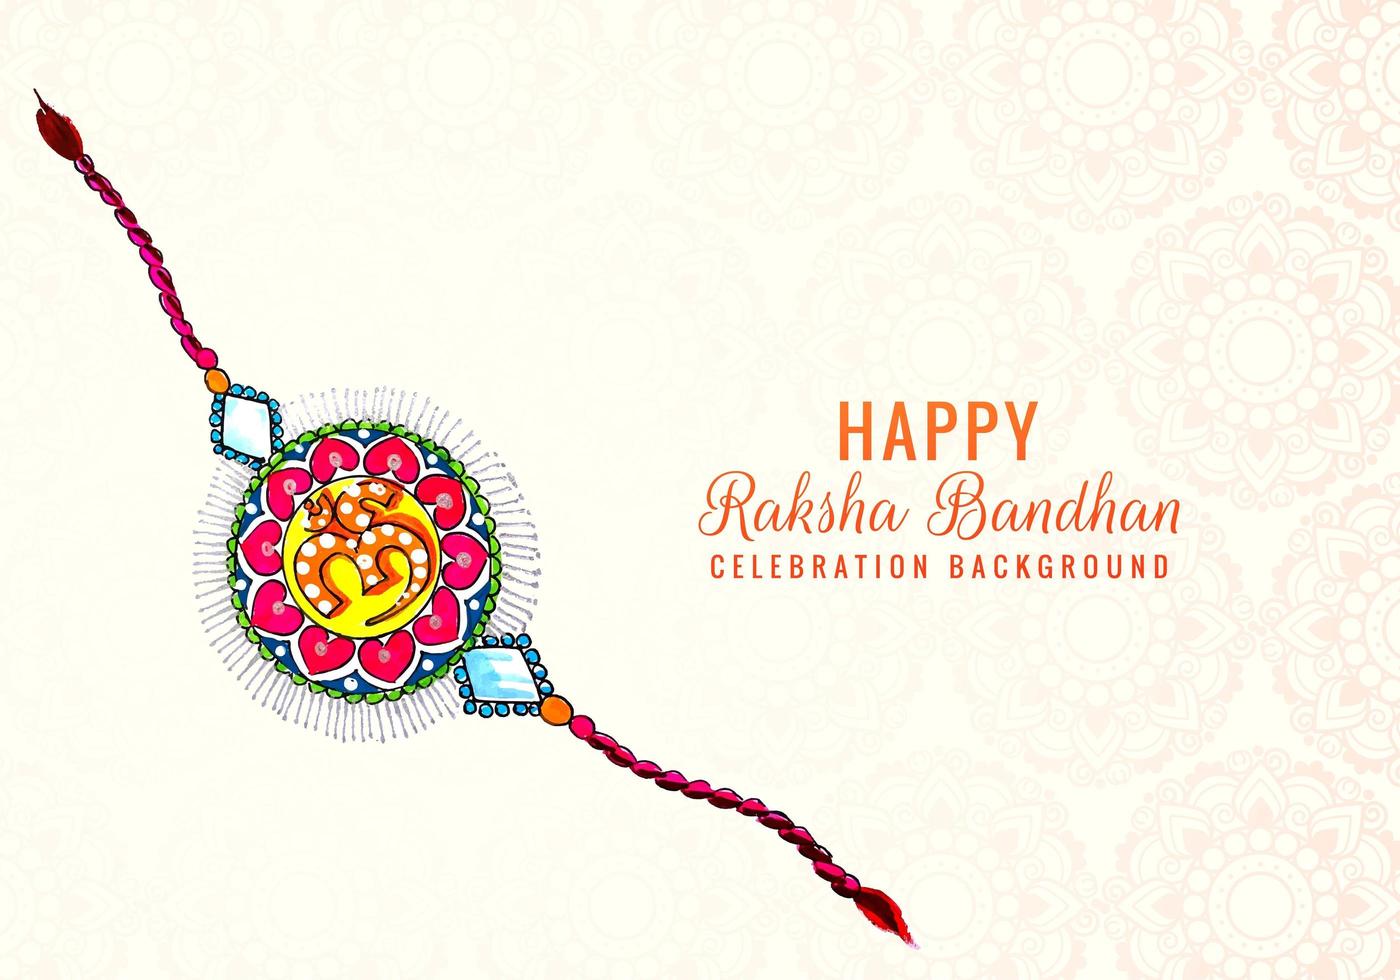 färgglad dekorerad rakhi för indisk festival vektor